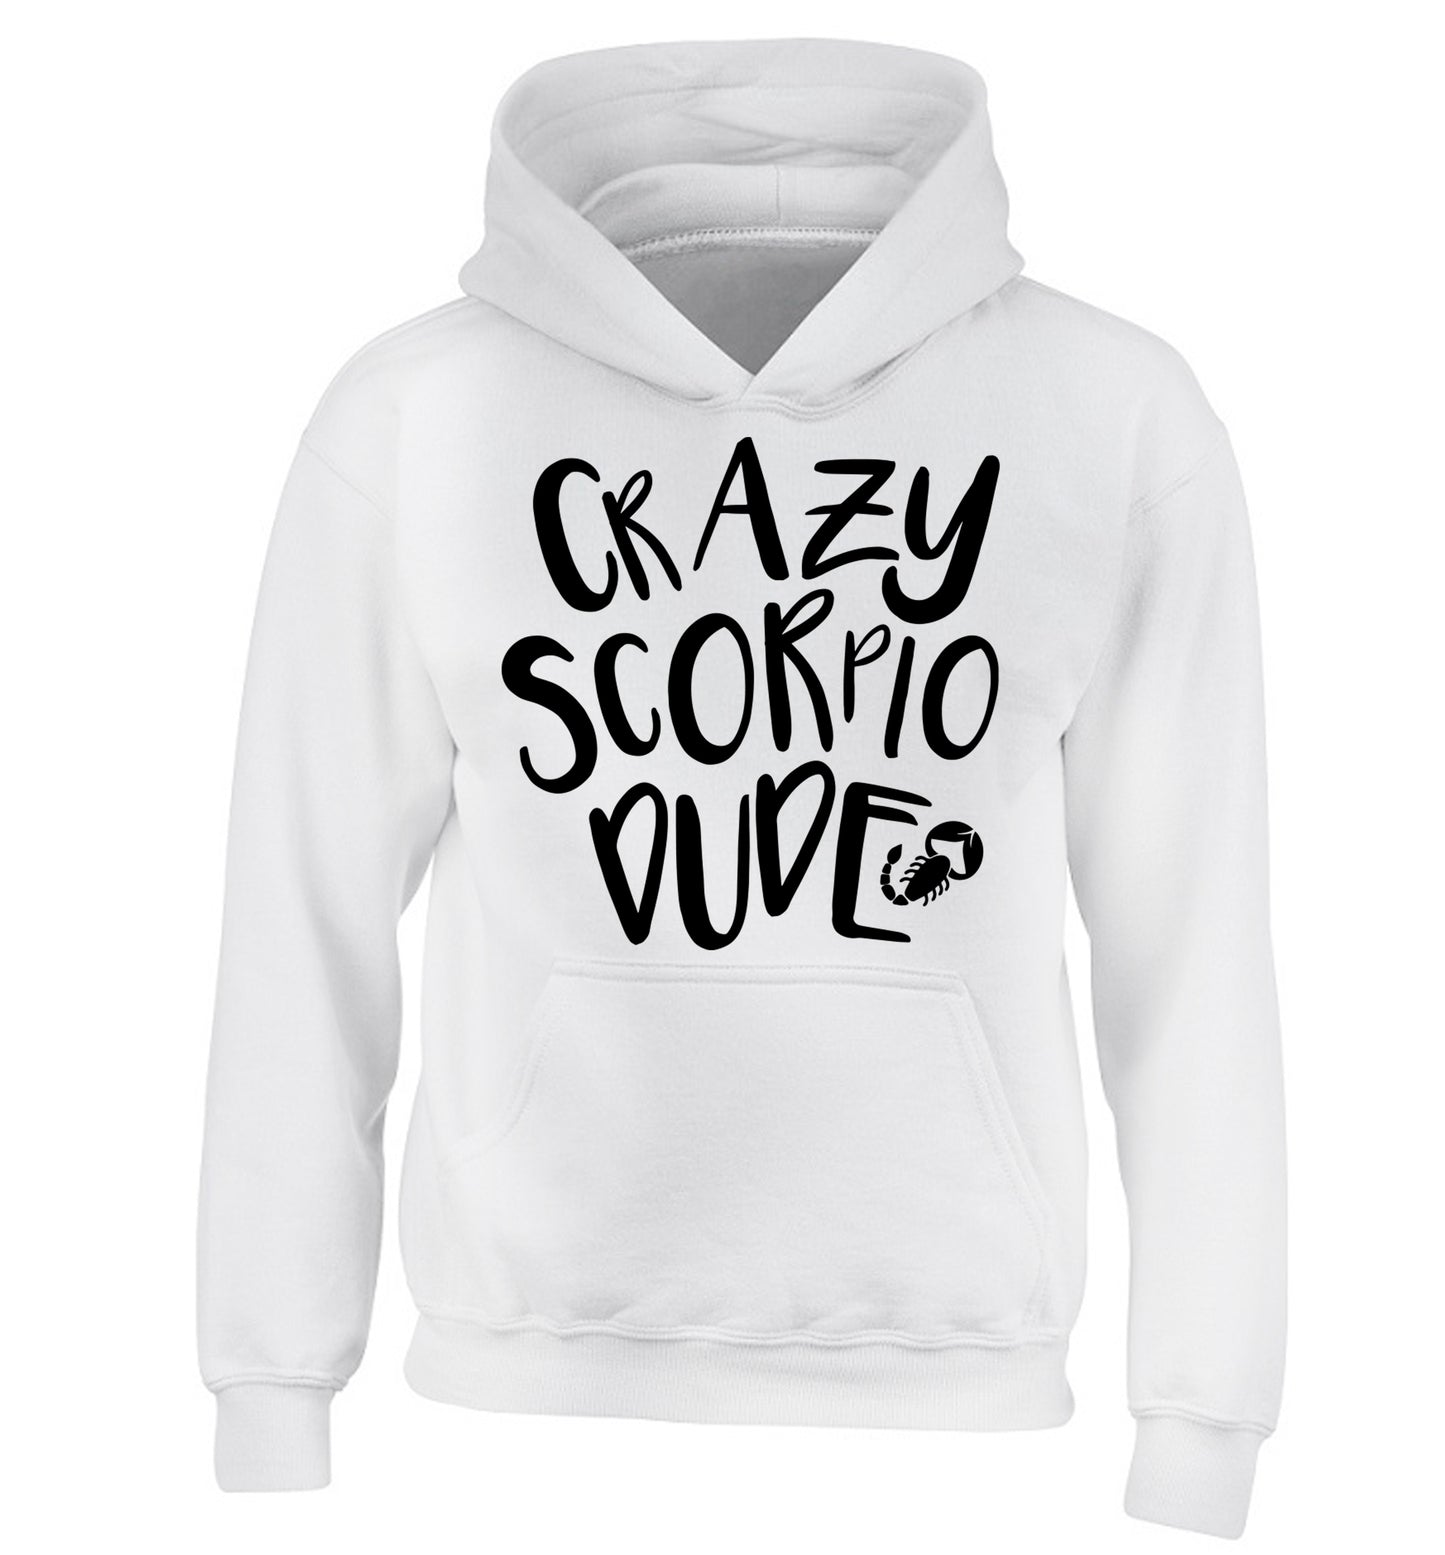 Crazy scorpio dude children's white hoodie 12-13 Years